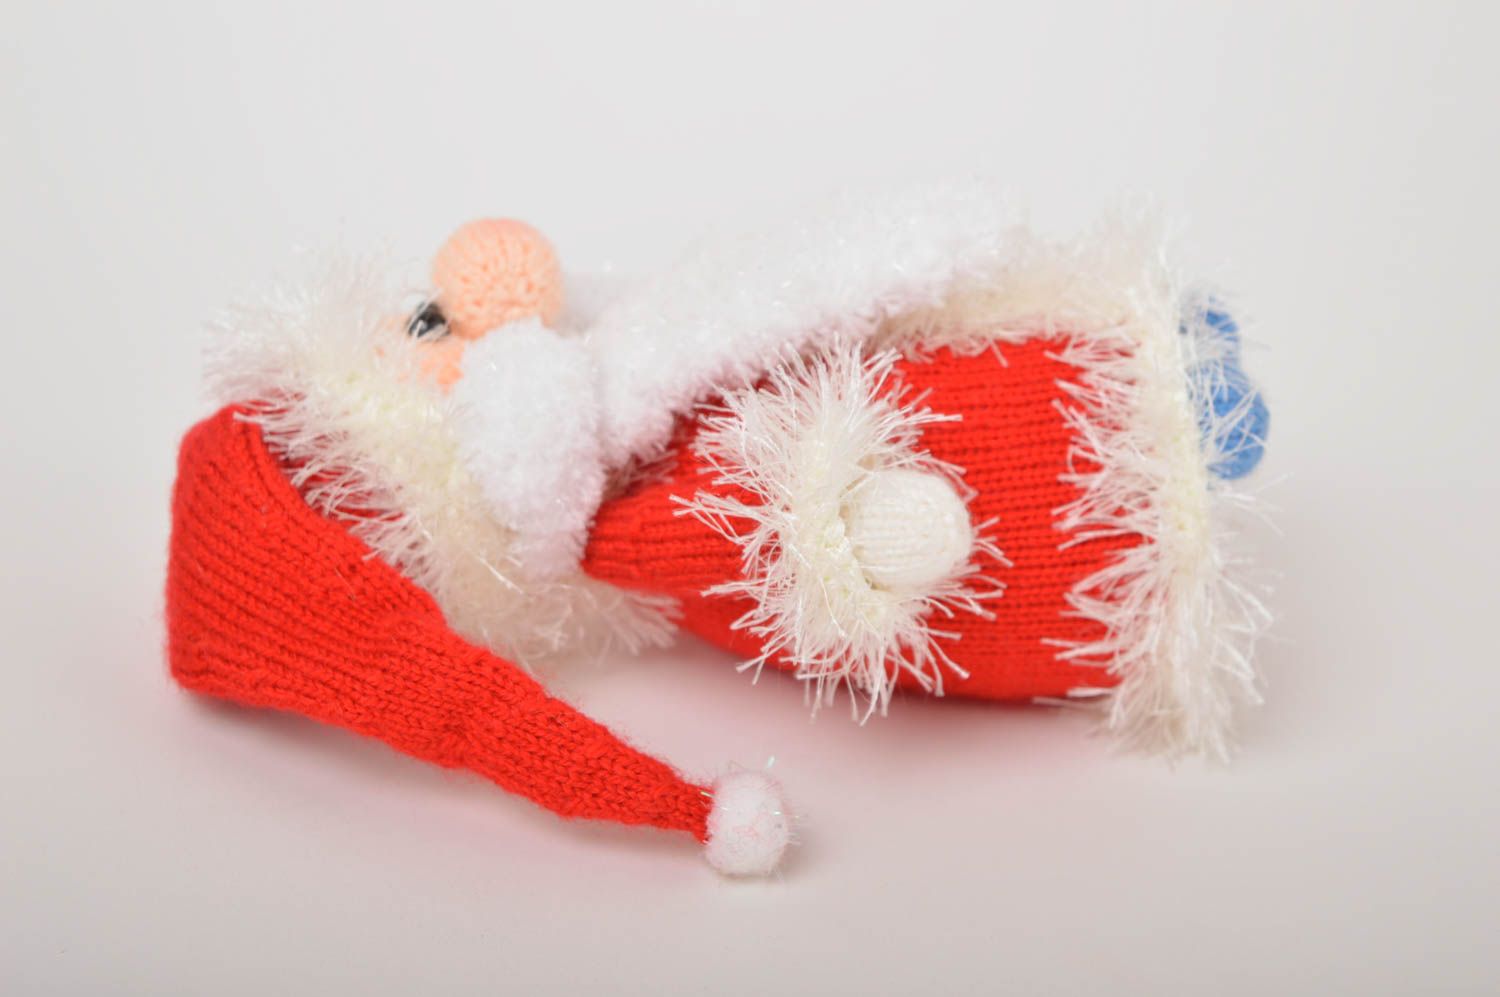 Handmade ausgefallenes Spielzeug Geschenk Idee Weihnachtsmann gehäkelt foto 5